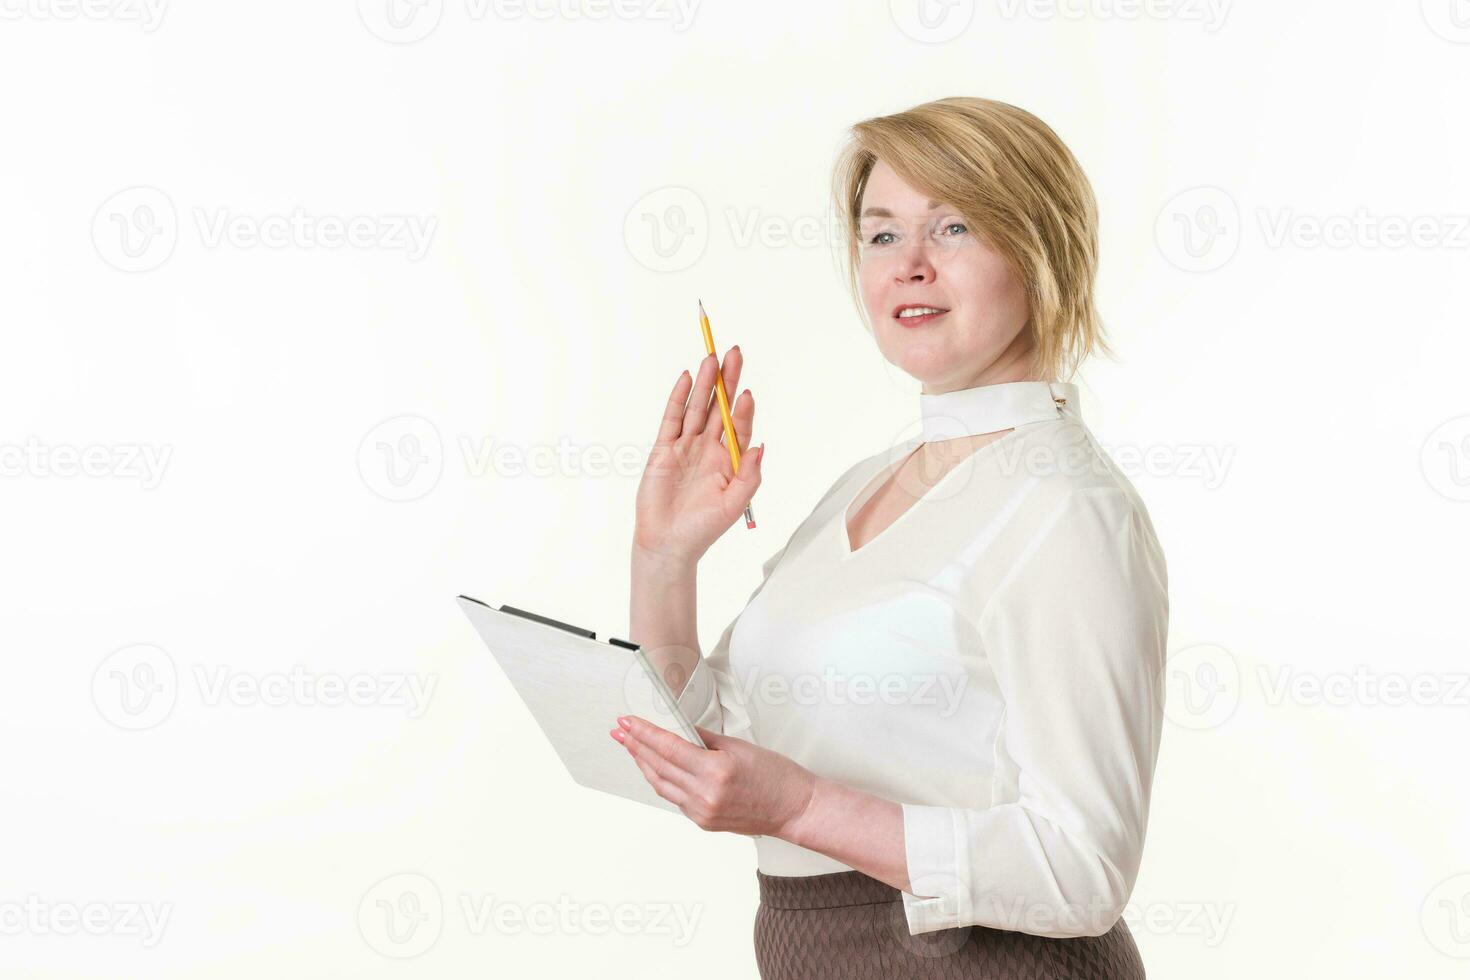 rubia mujer vistiendo en blanco blusa participación portapapeles y lápiz en manos, mirando lejos y sonriente foto